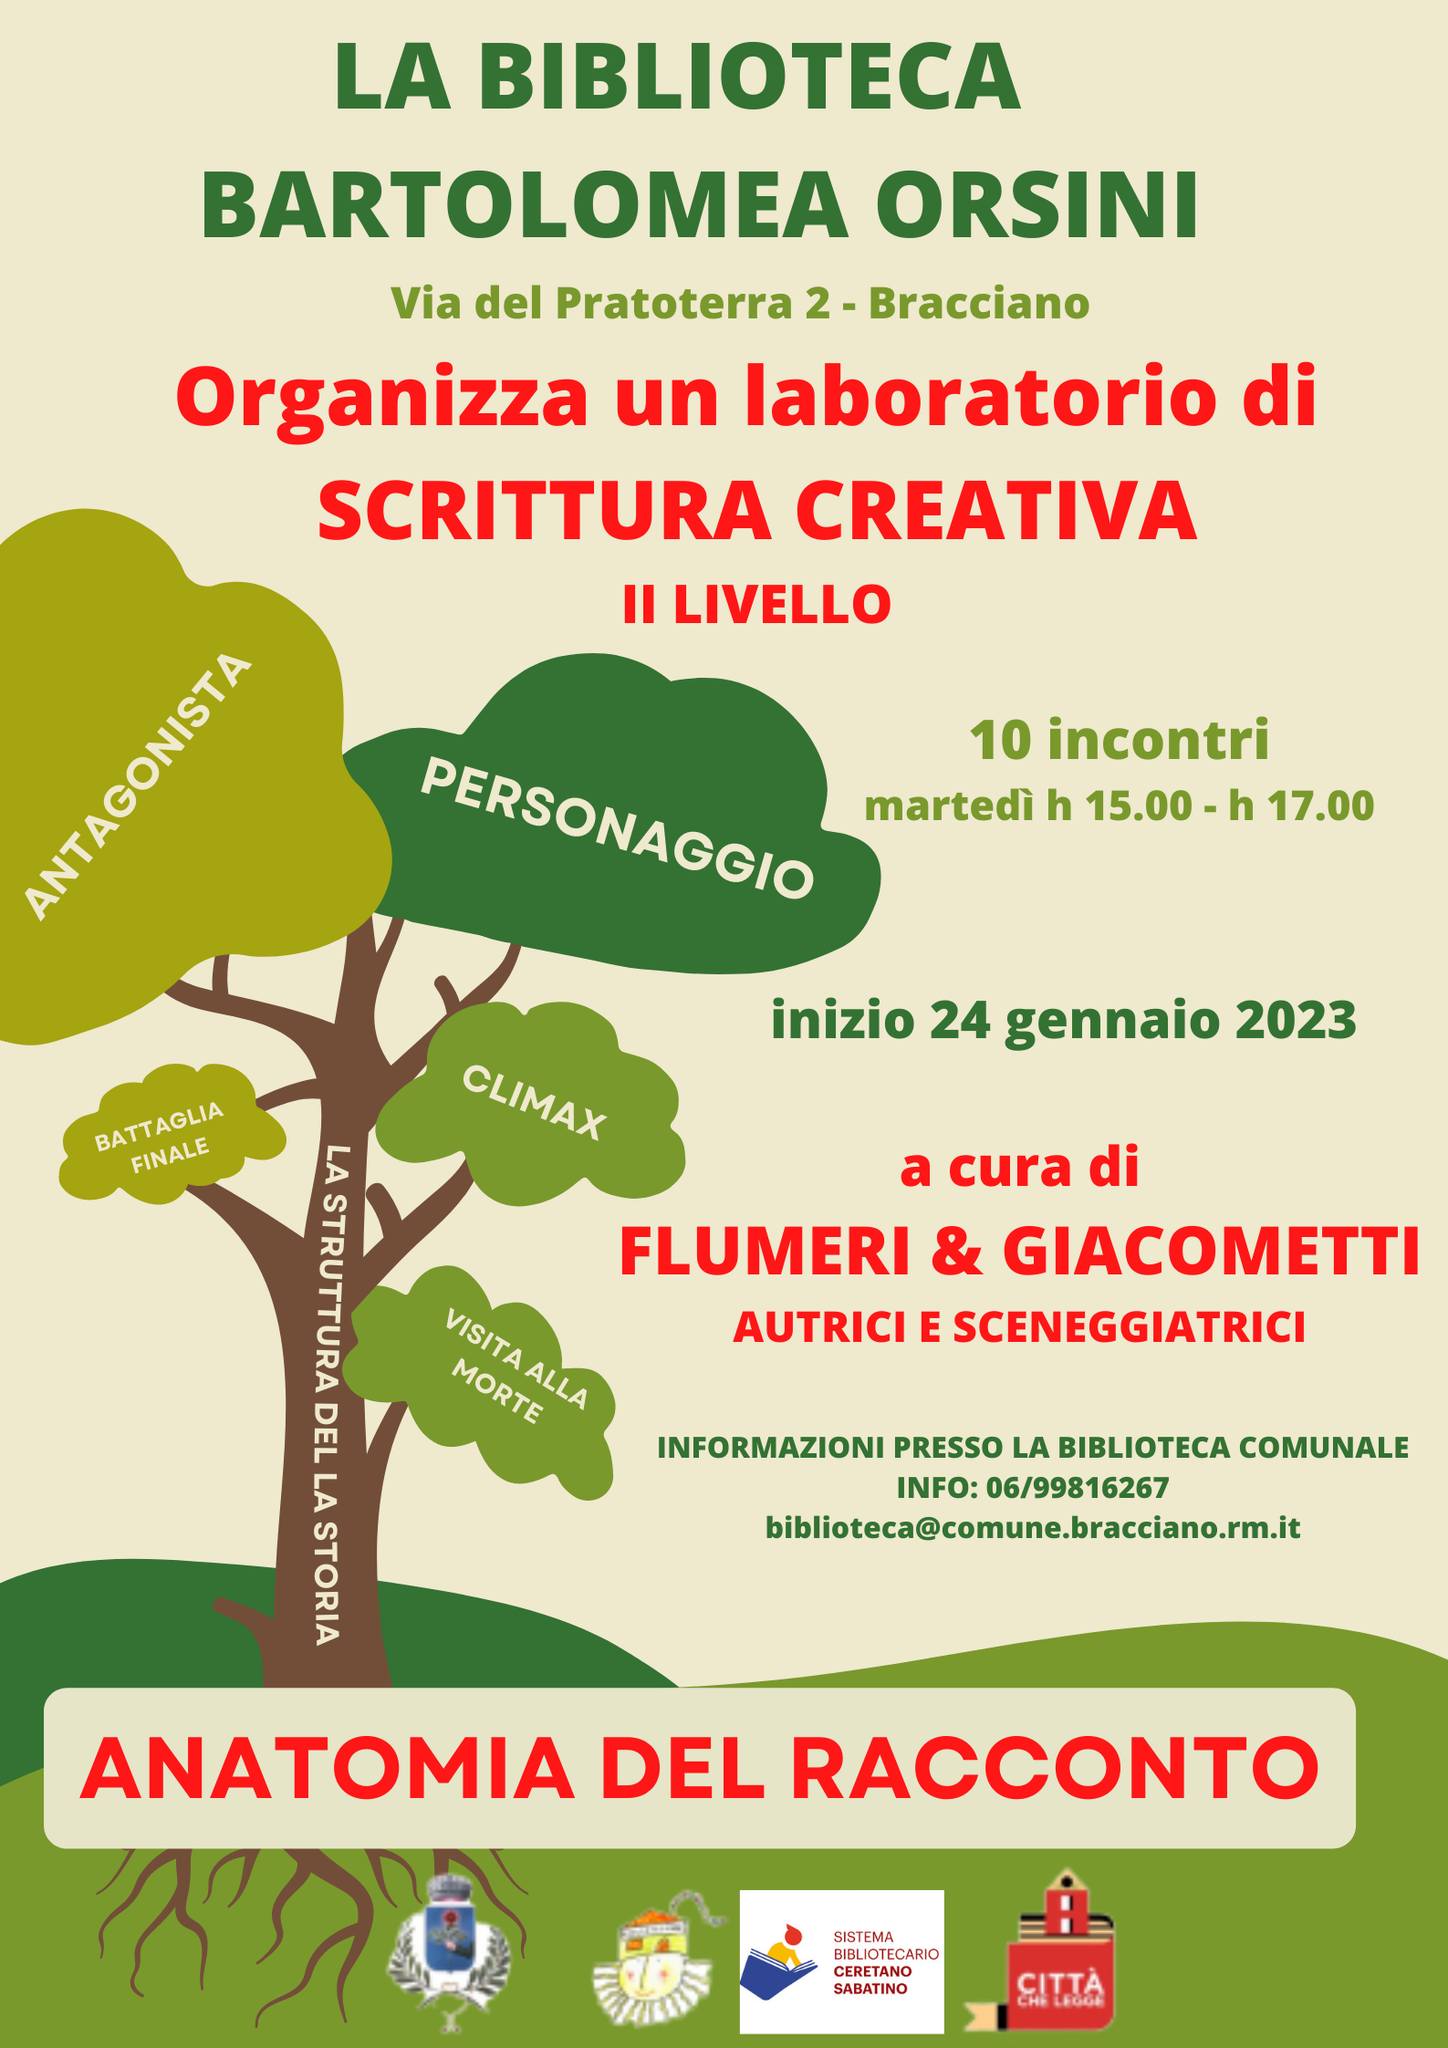 laboratorio di scrittura creativa biblioteca Bartolomea Orsini